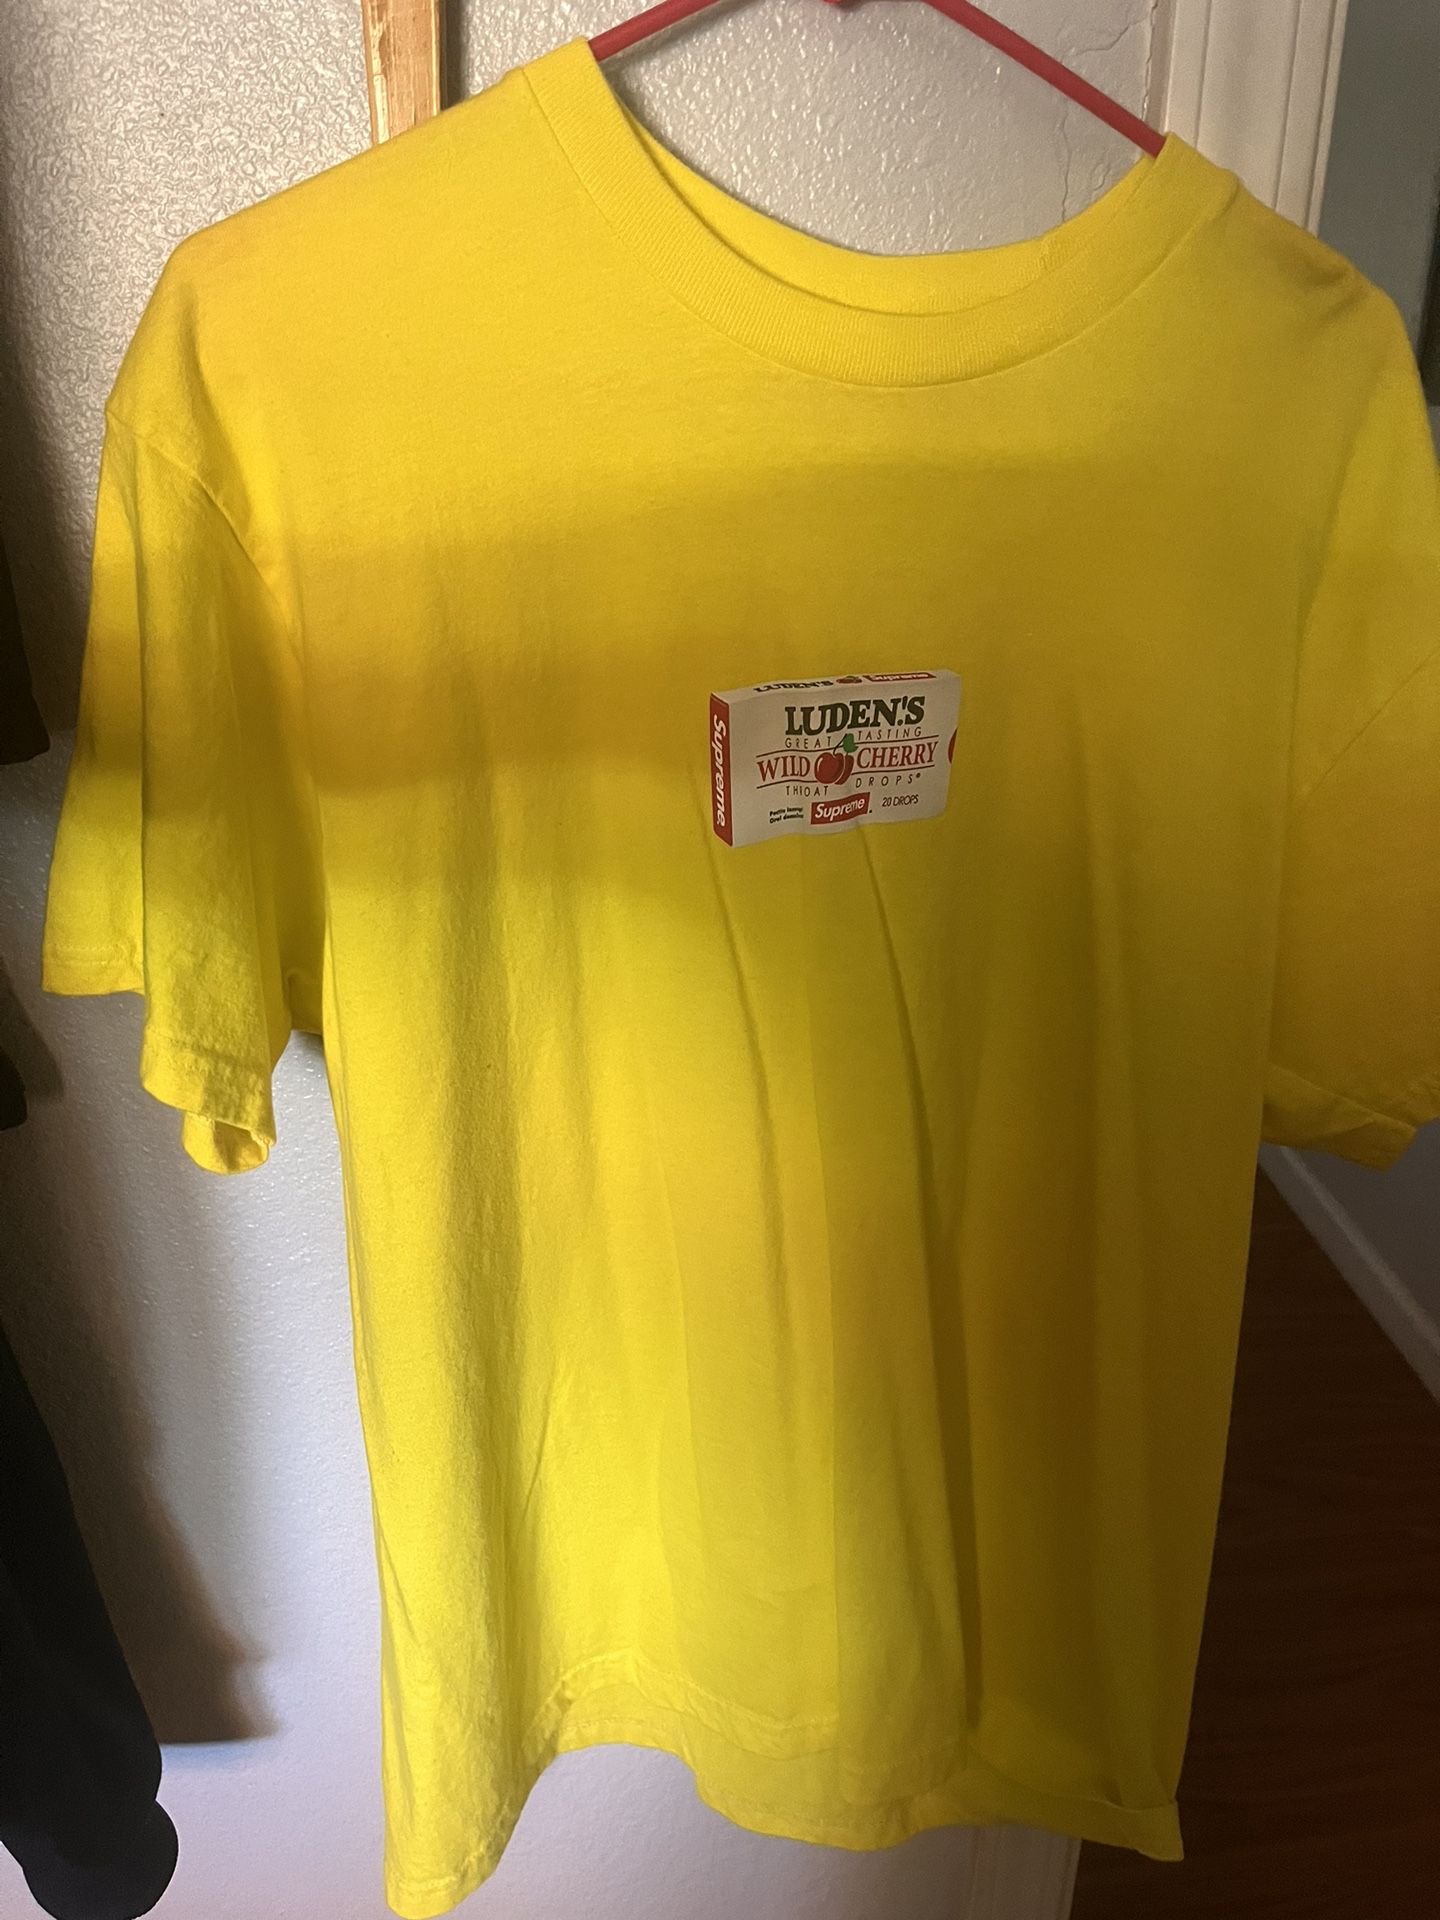 Supreme Wild Cherry Yellow Shirt 